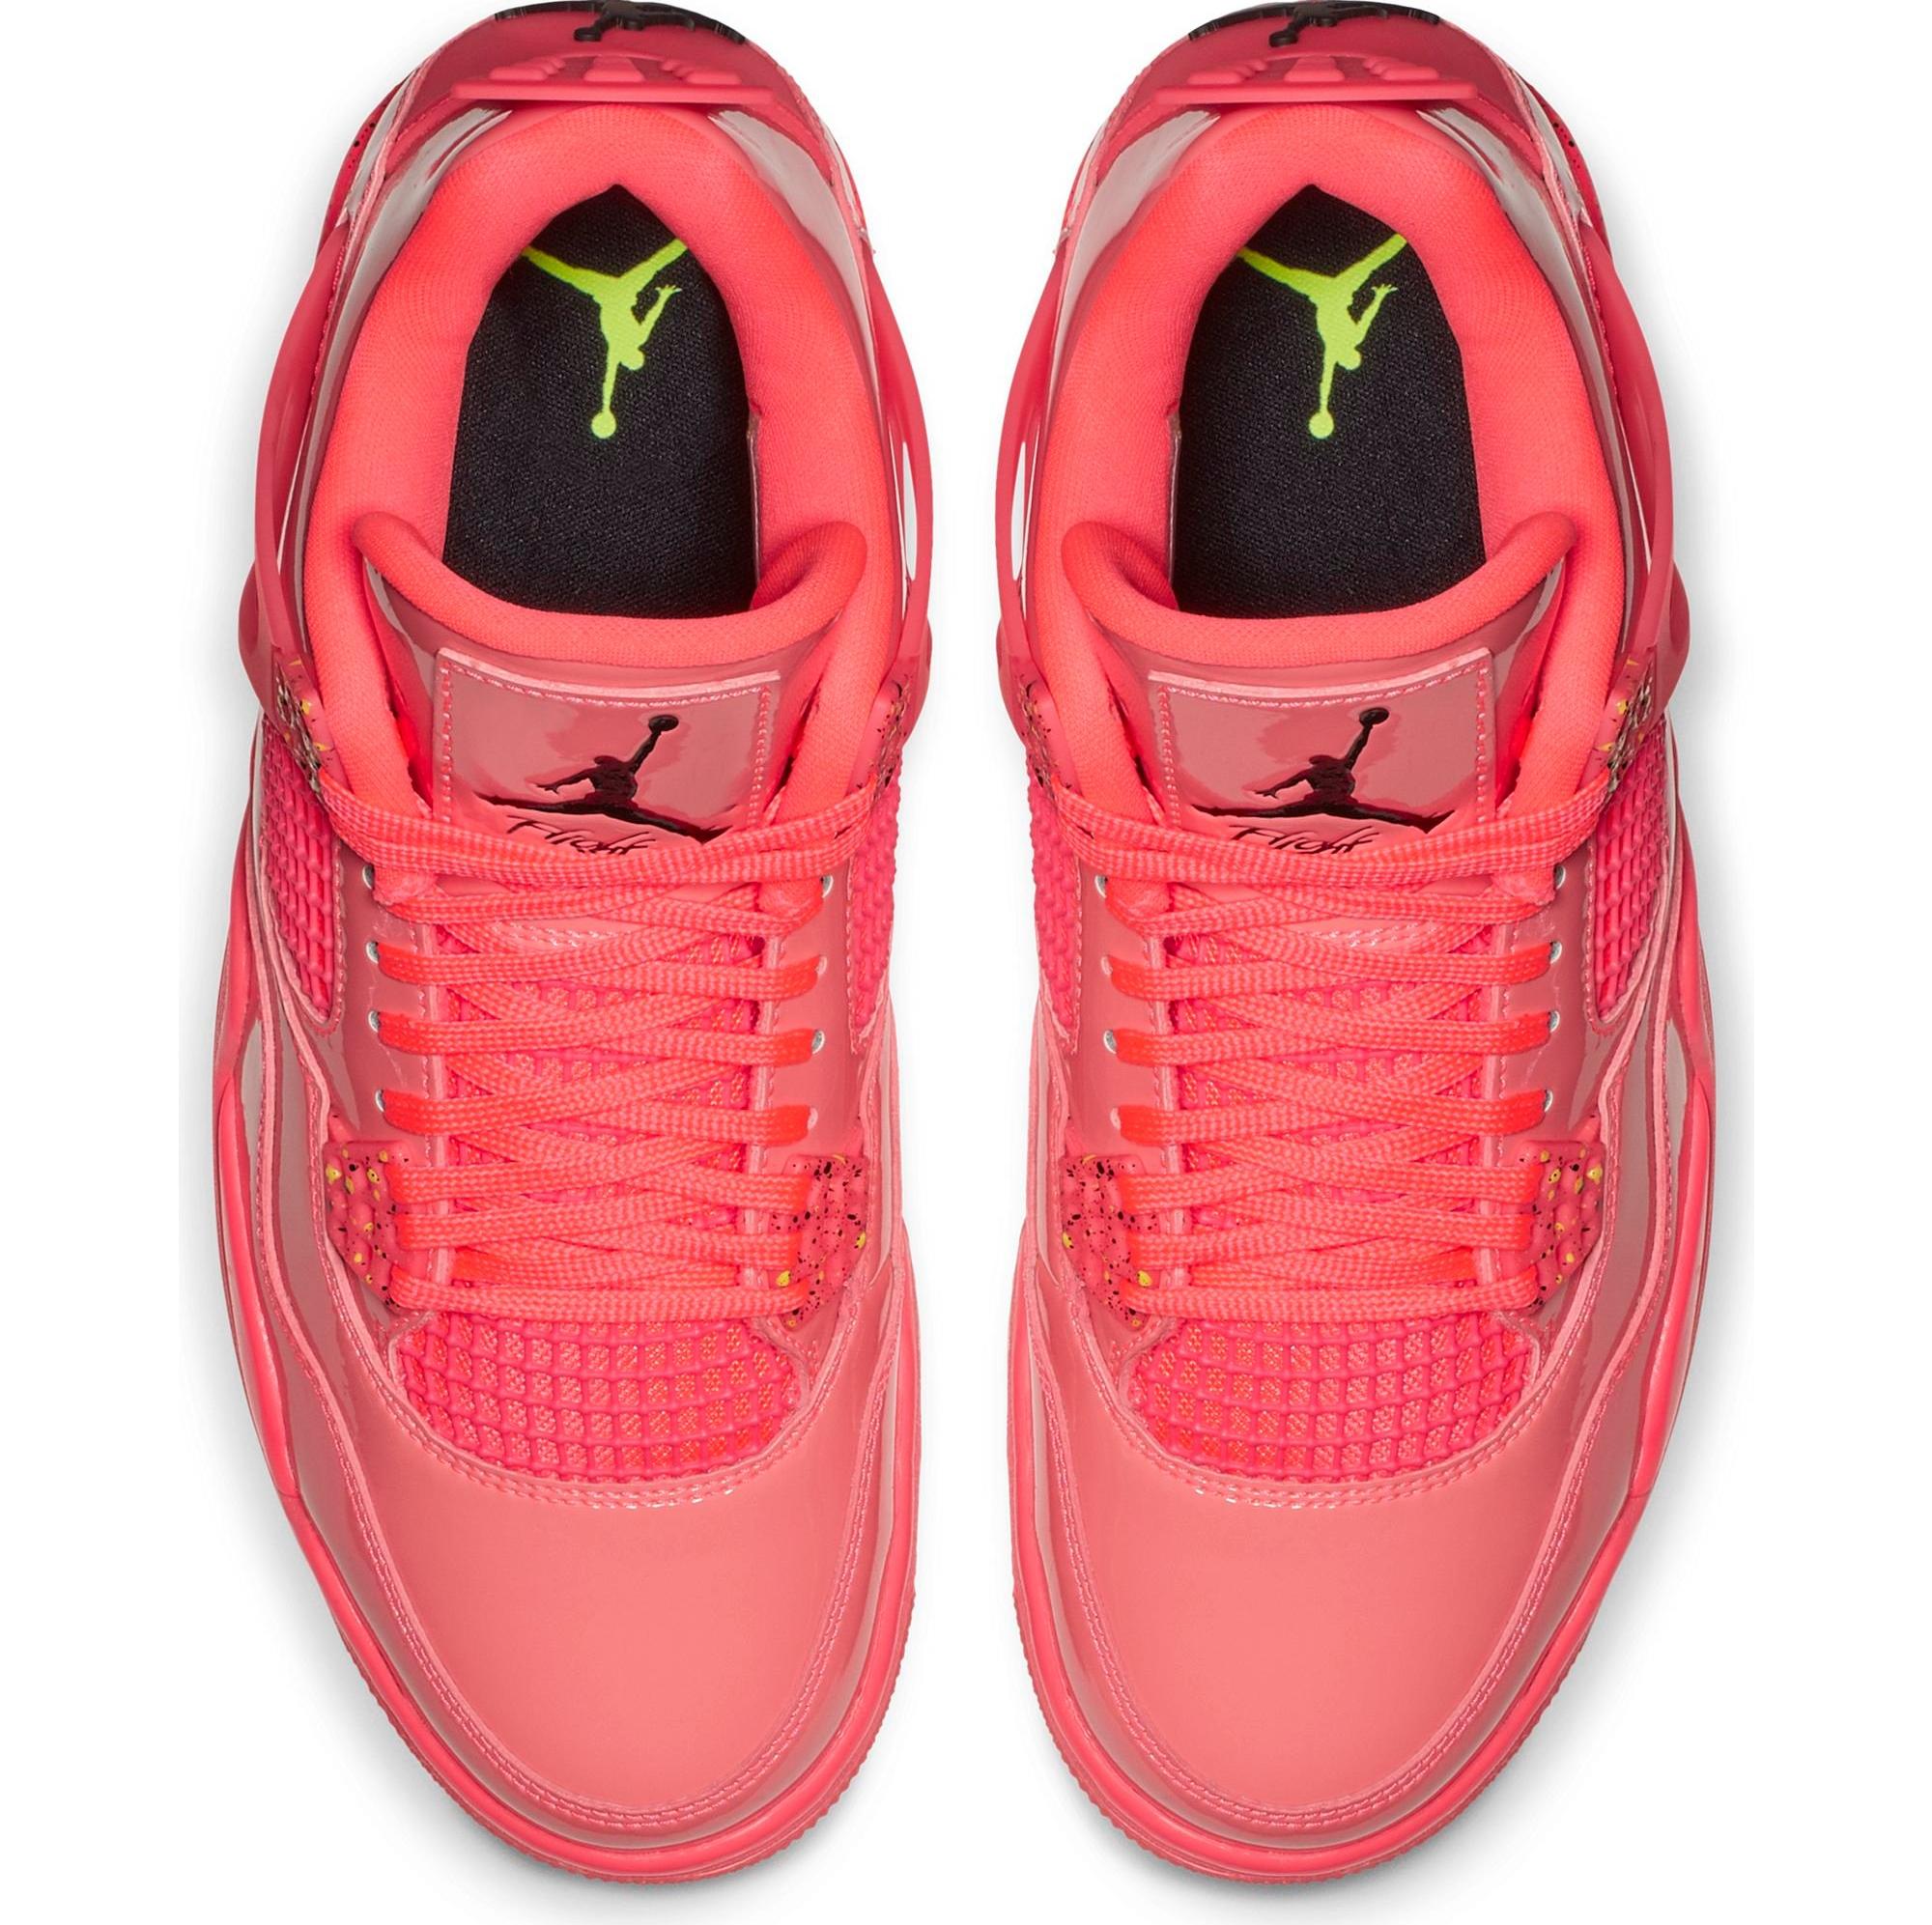 Release – Jordan Retro 4 “Hot Punch” Women's Shoes